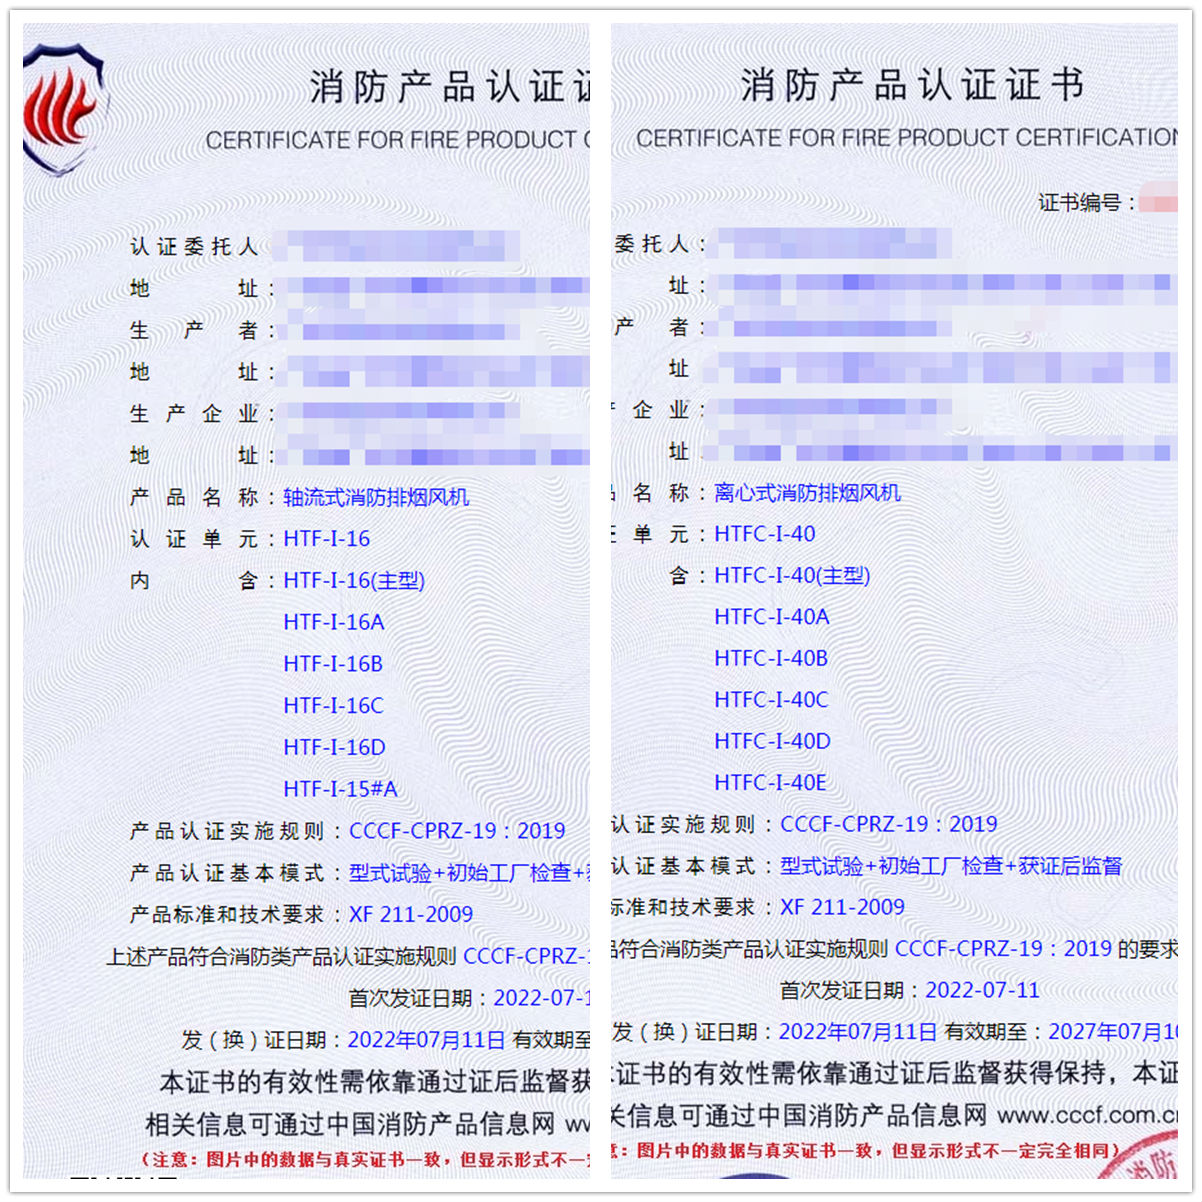 广州轴流式消防排烟风机认证、离心式消防排烟风机消防认证证书